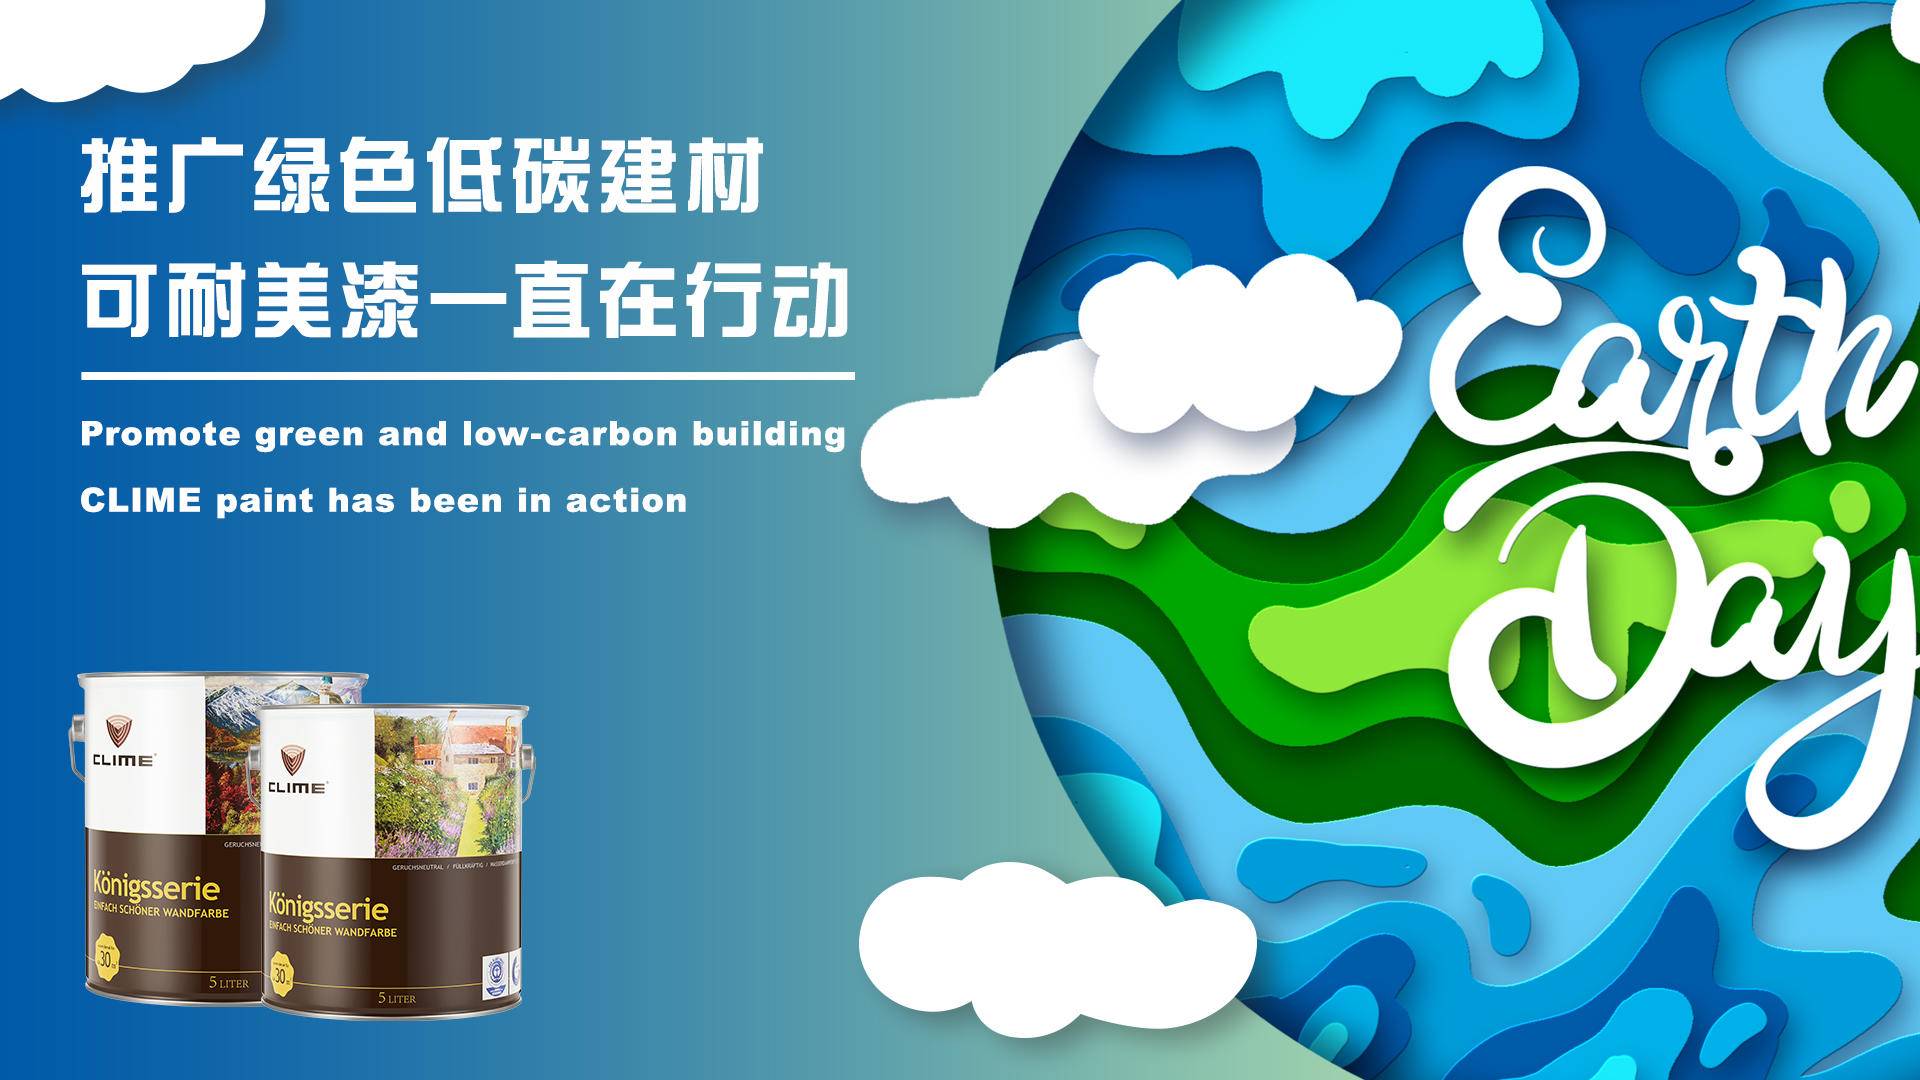 线上线下相结合 青岛多角度开展绿色低碳节能宣传活动凤凰网青岛_凤凰网